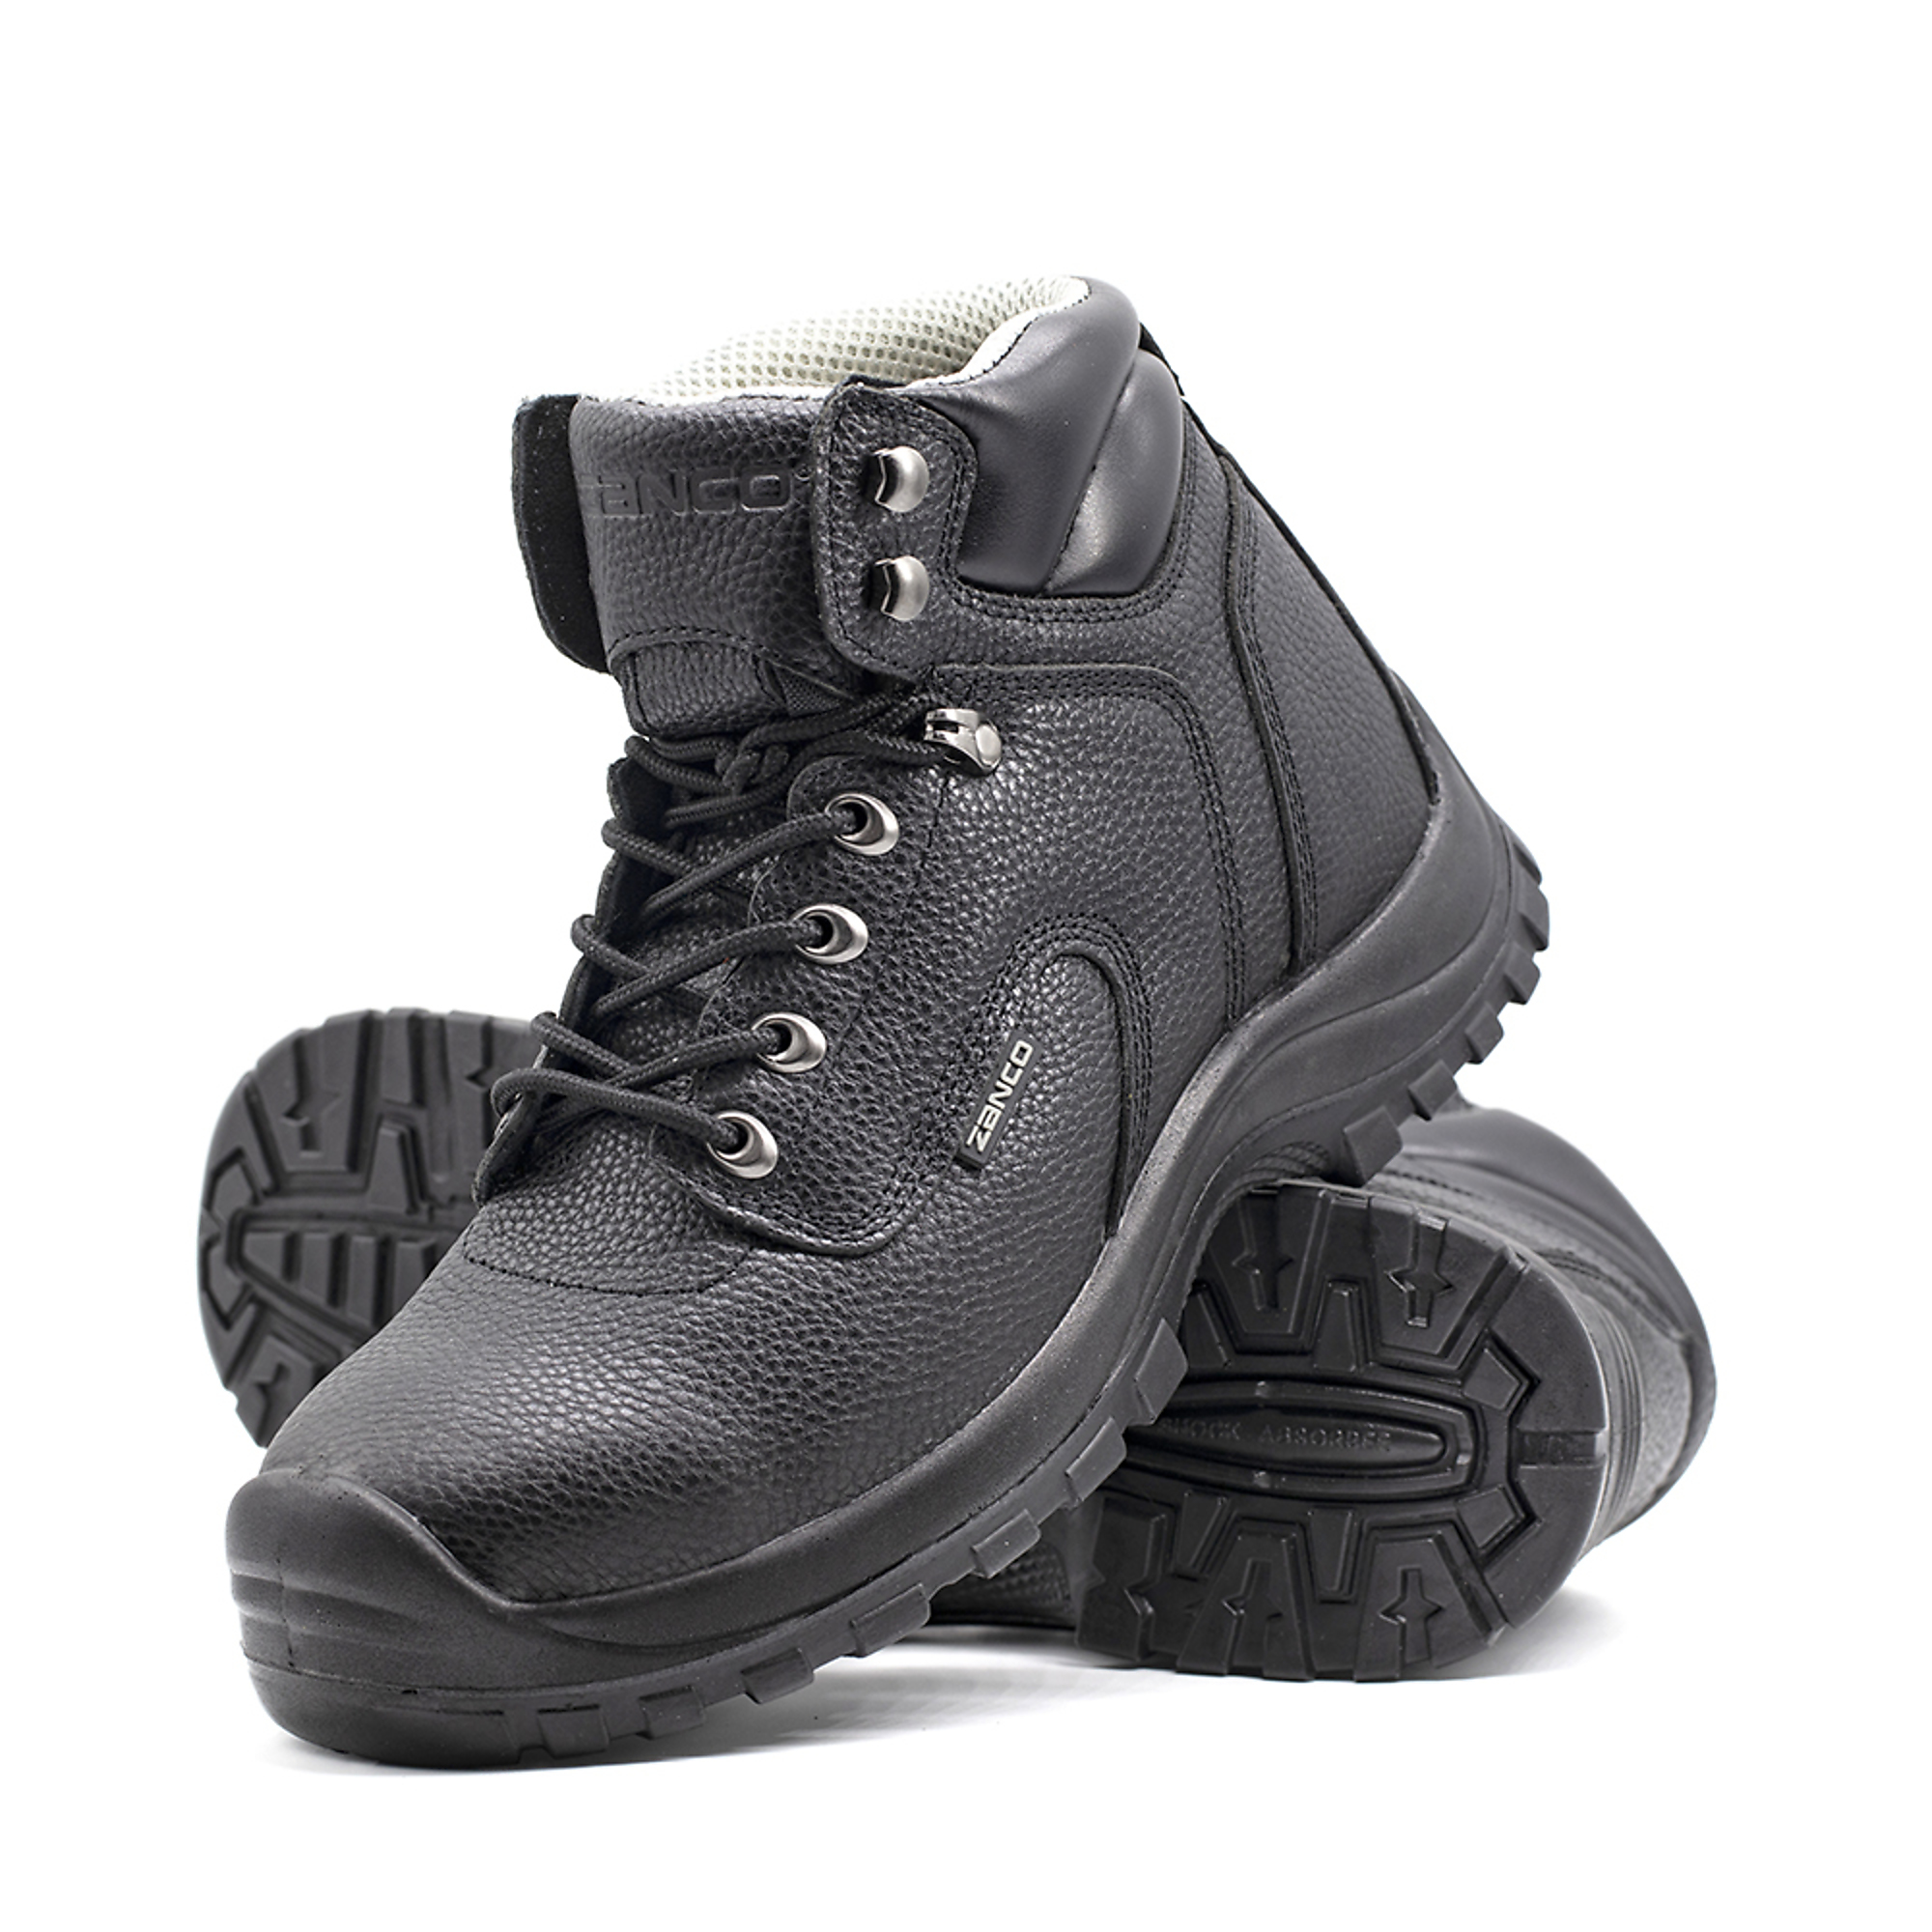 Zanco, Men's Waterproof,Steel toe,EH,Safety boots, Size 8, Width Medium, Color BLACK, Model 7667-SE-8